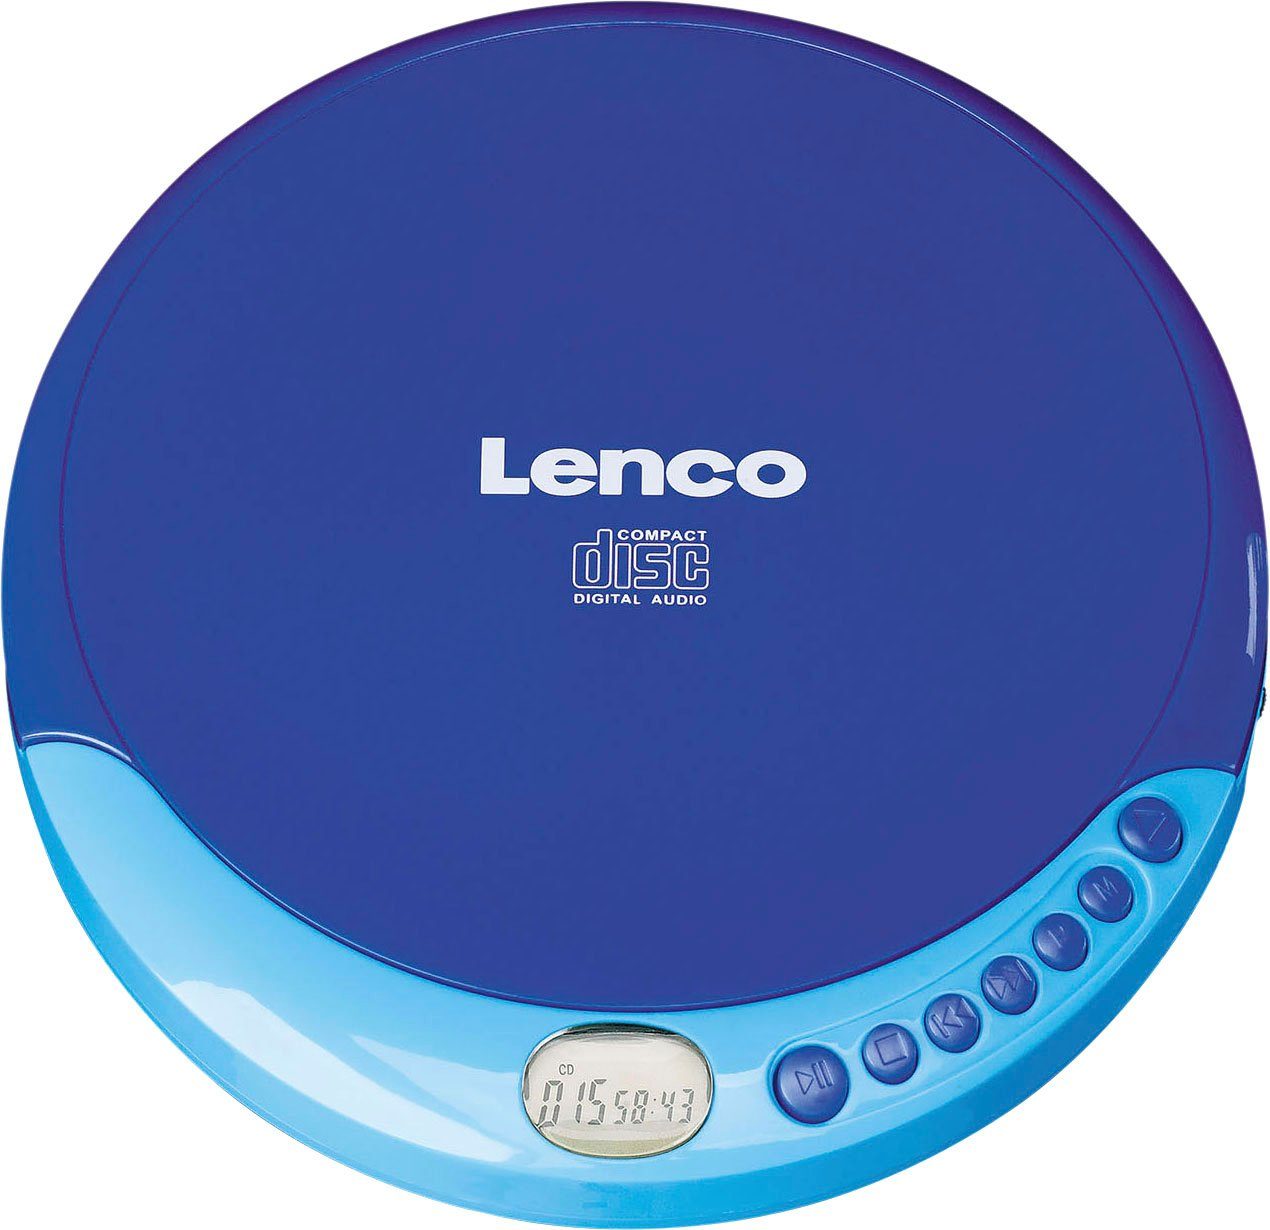 CD-011 blau Lenco CD-Player